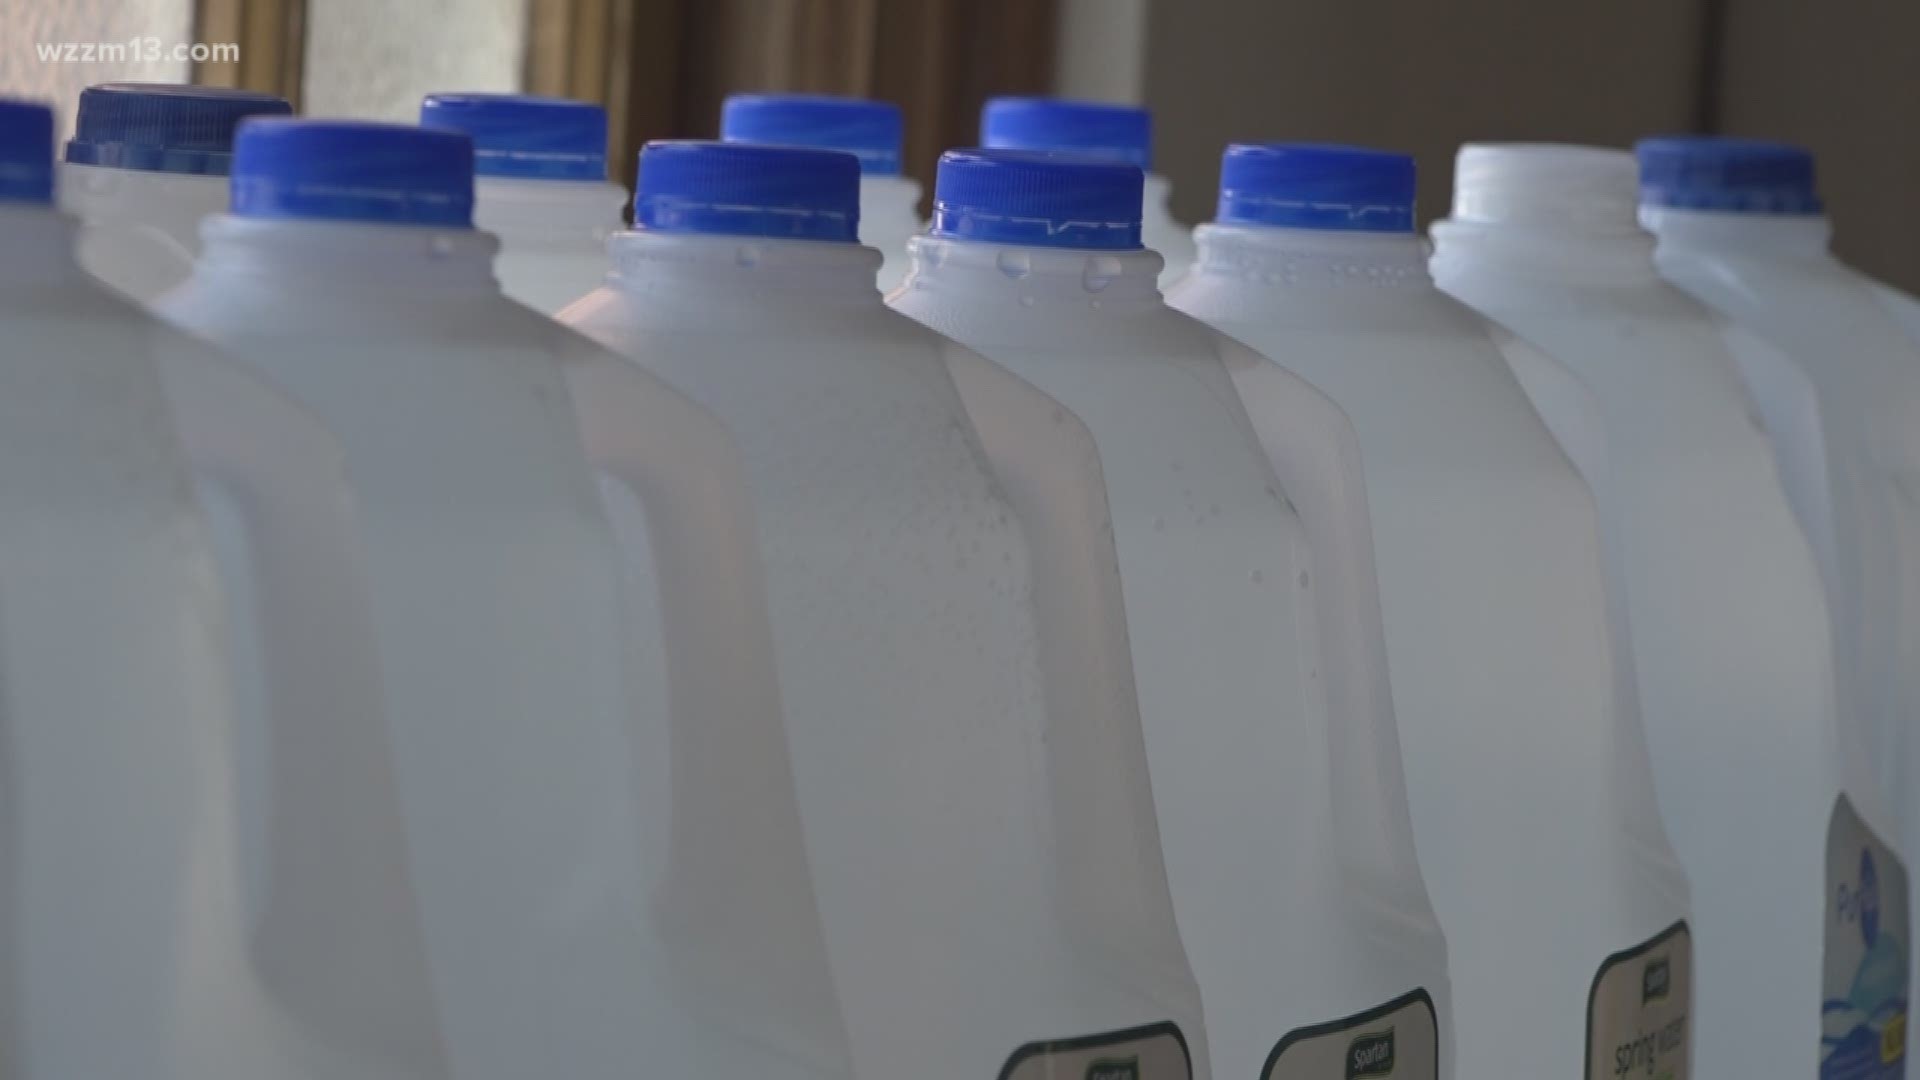 Judge blocks Flint water distribution